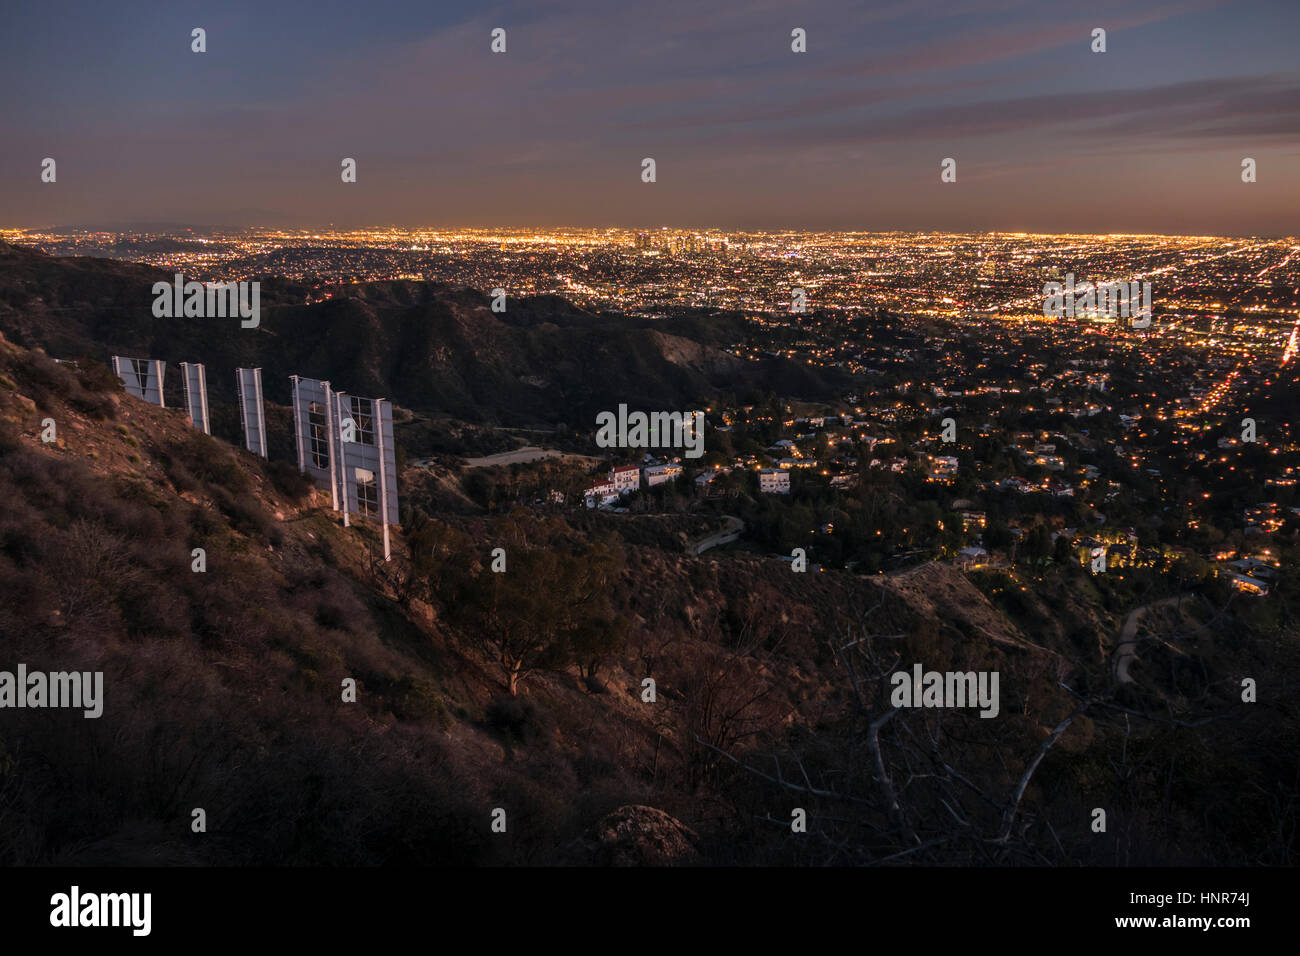 Los Angeles, Kalifornien, USA - 4. Februar 2016: Hollywood Zeichen und der Innenstadt von Los Angeles Hügel Stadtbild Abenddämmerung Blick. Stockfoto